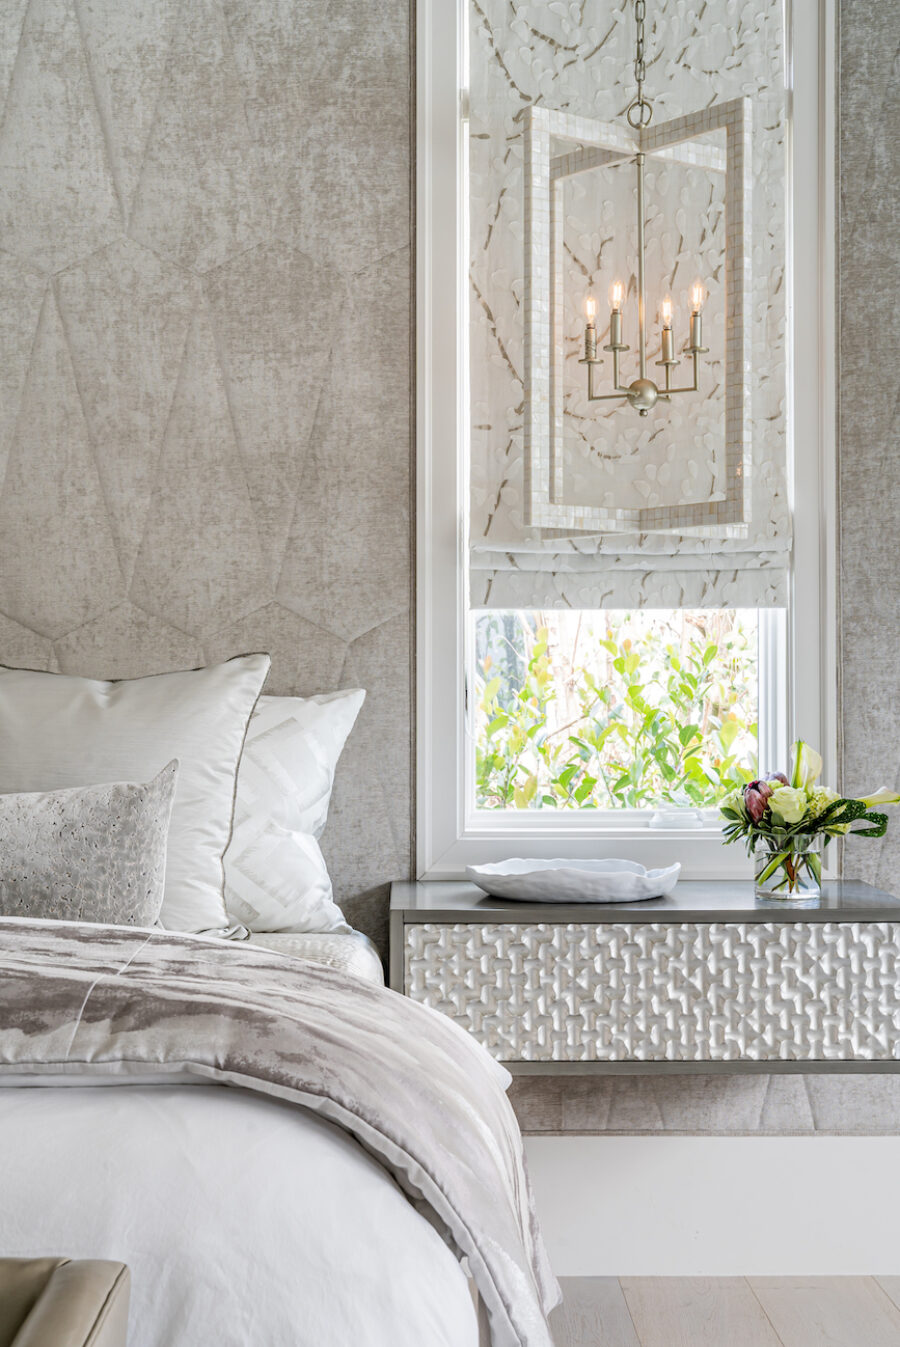 design-west-bedroom-designer-floating-nightstand